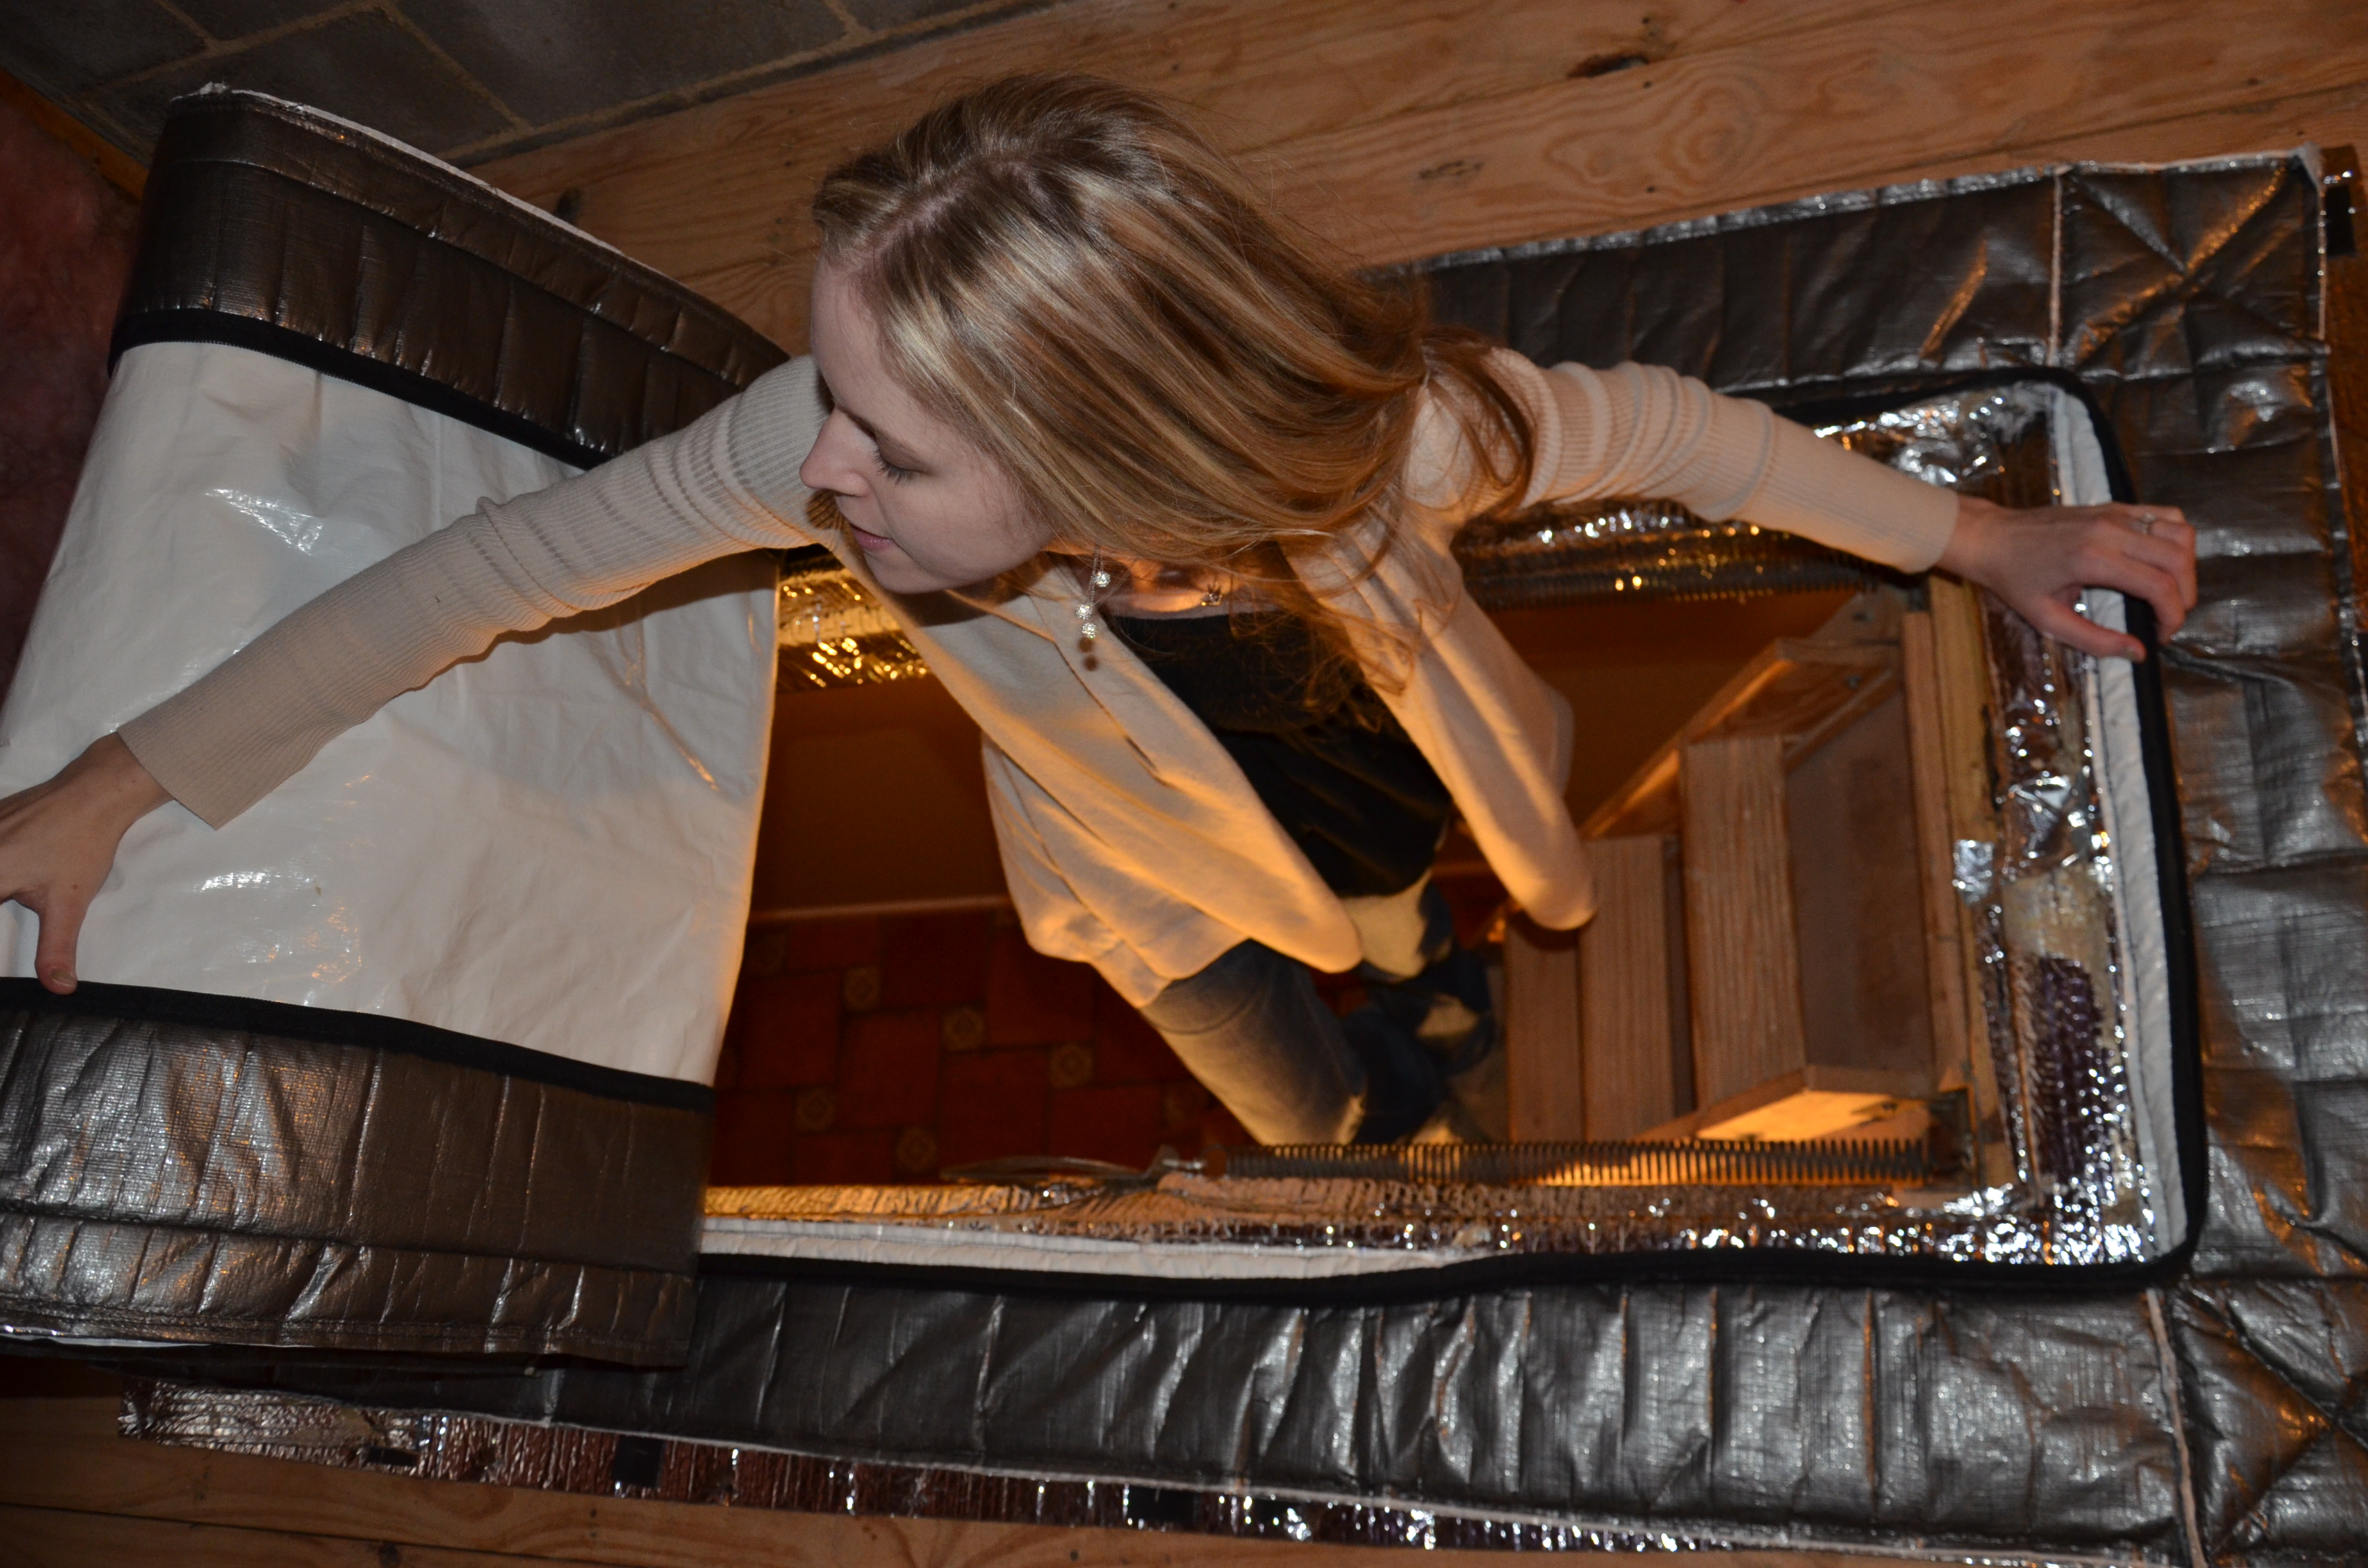 Attic Zipper - attic stair insulator 24" x 54" x 13"